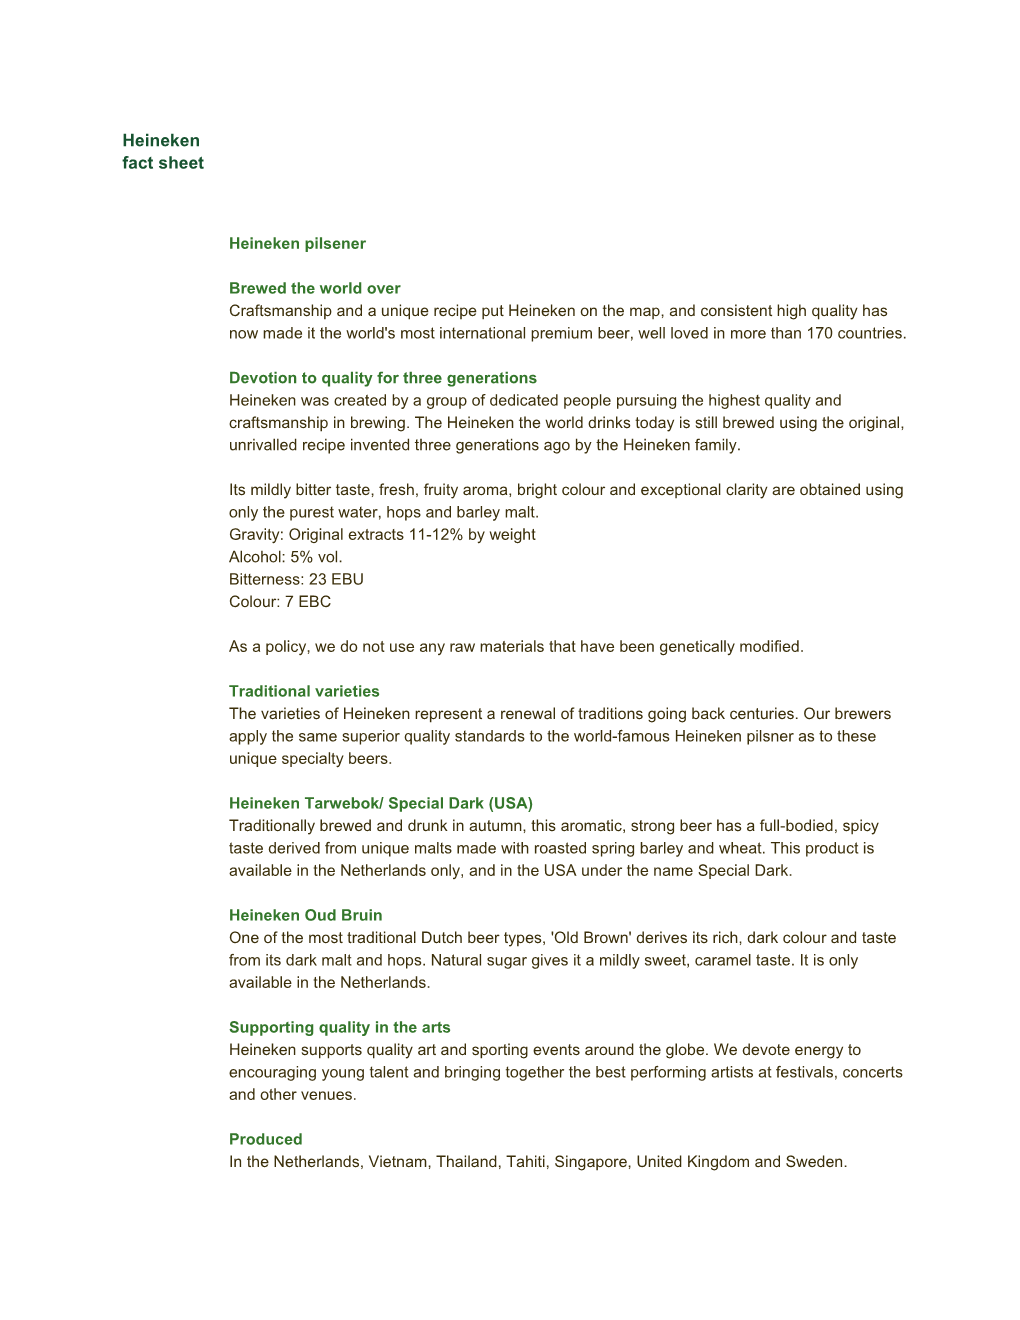 Heineken Fact Sheet